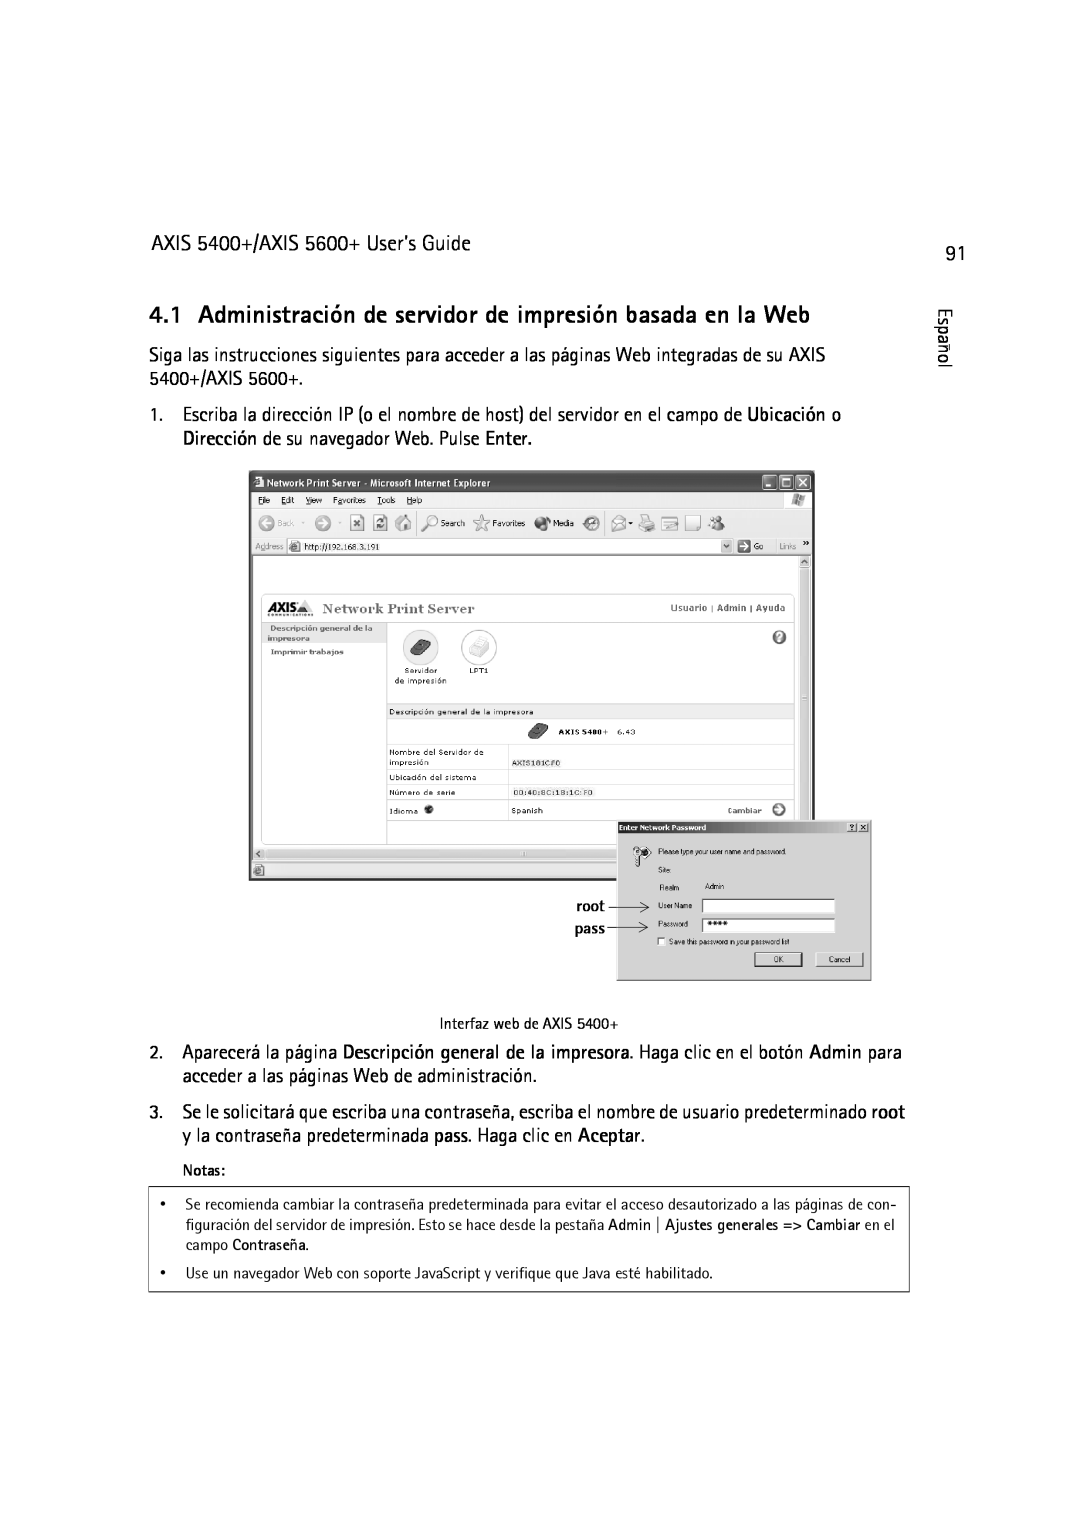 Dell manual Administración de servidor de impresión basada en la Web, AXIS 5400+/AXIS 5600+ User’s Guide 